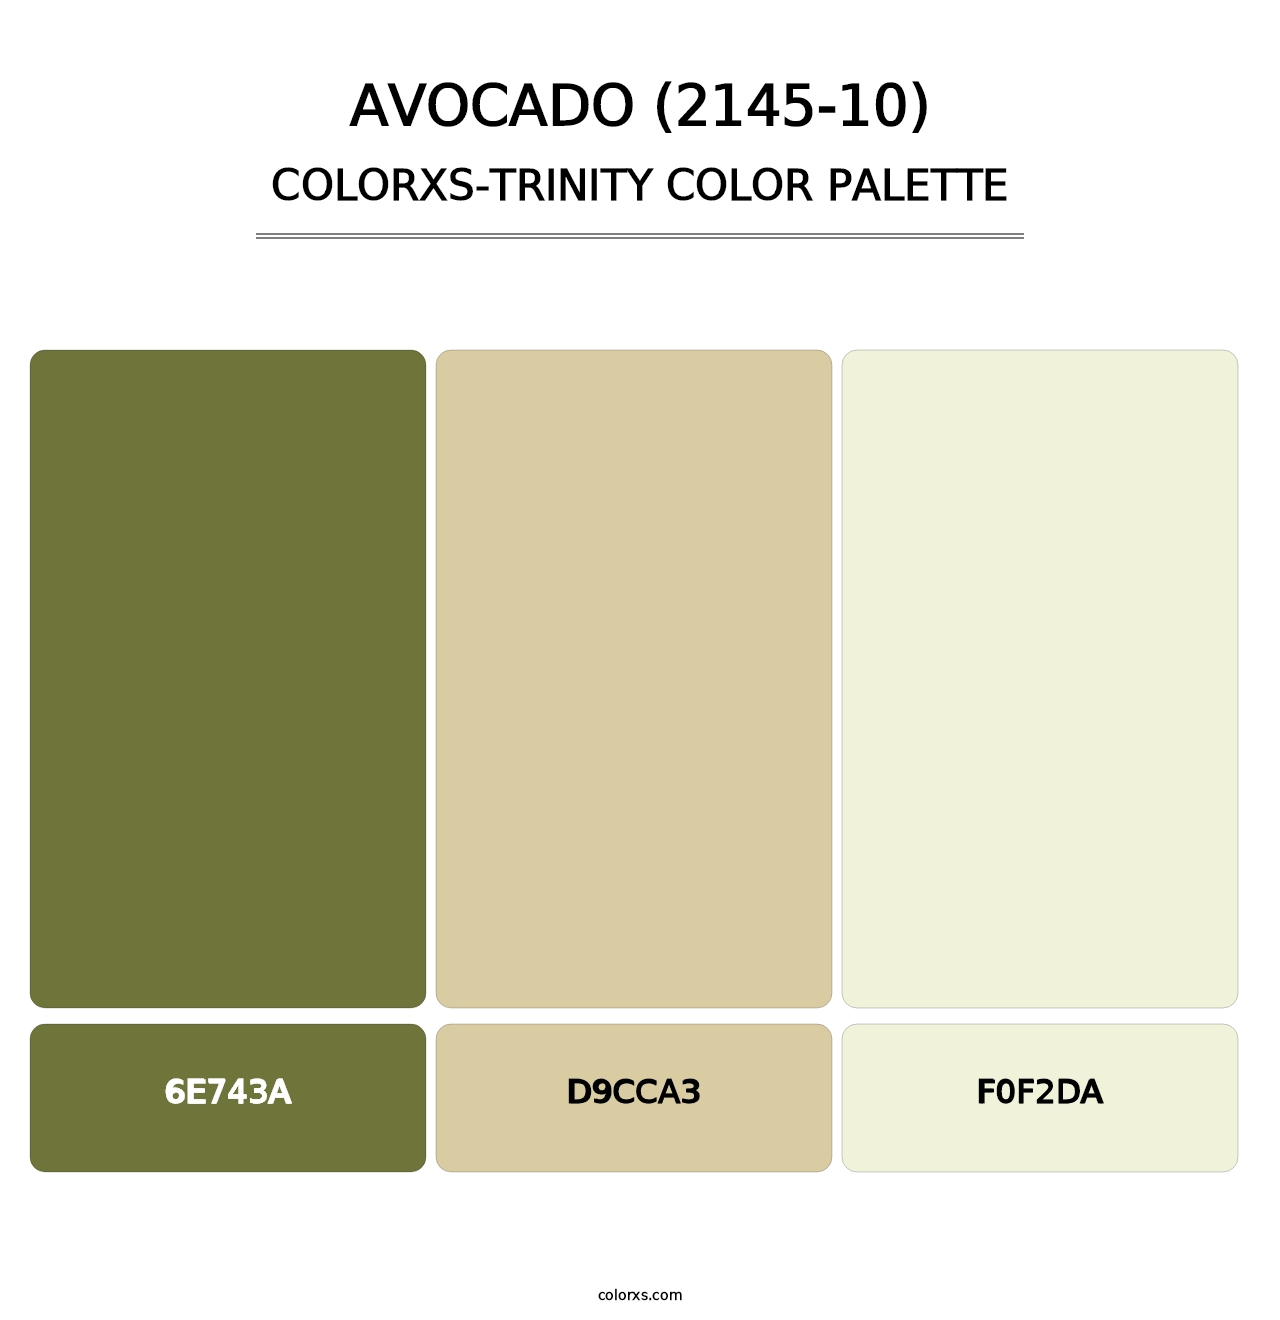 Avocado (2145-10) - Colorxs Trinity Palette